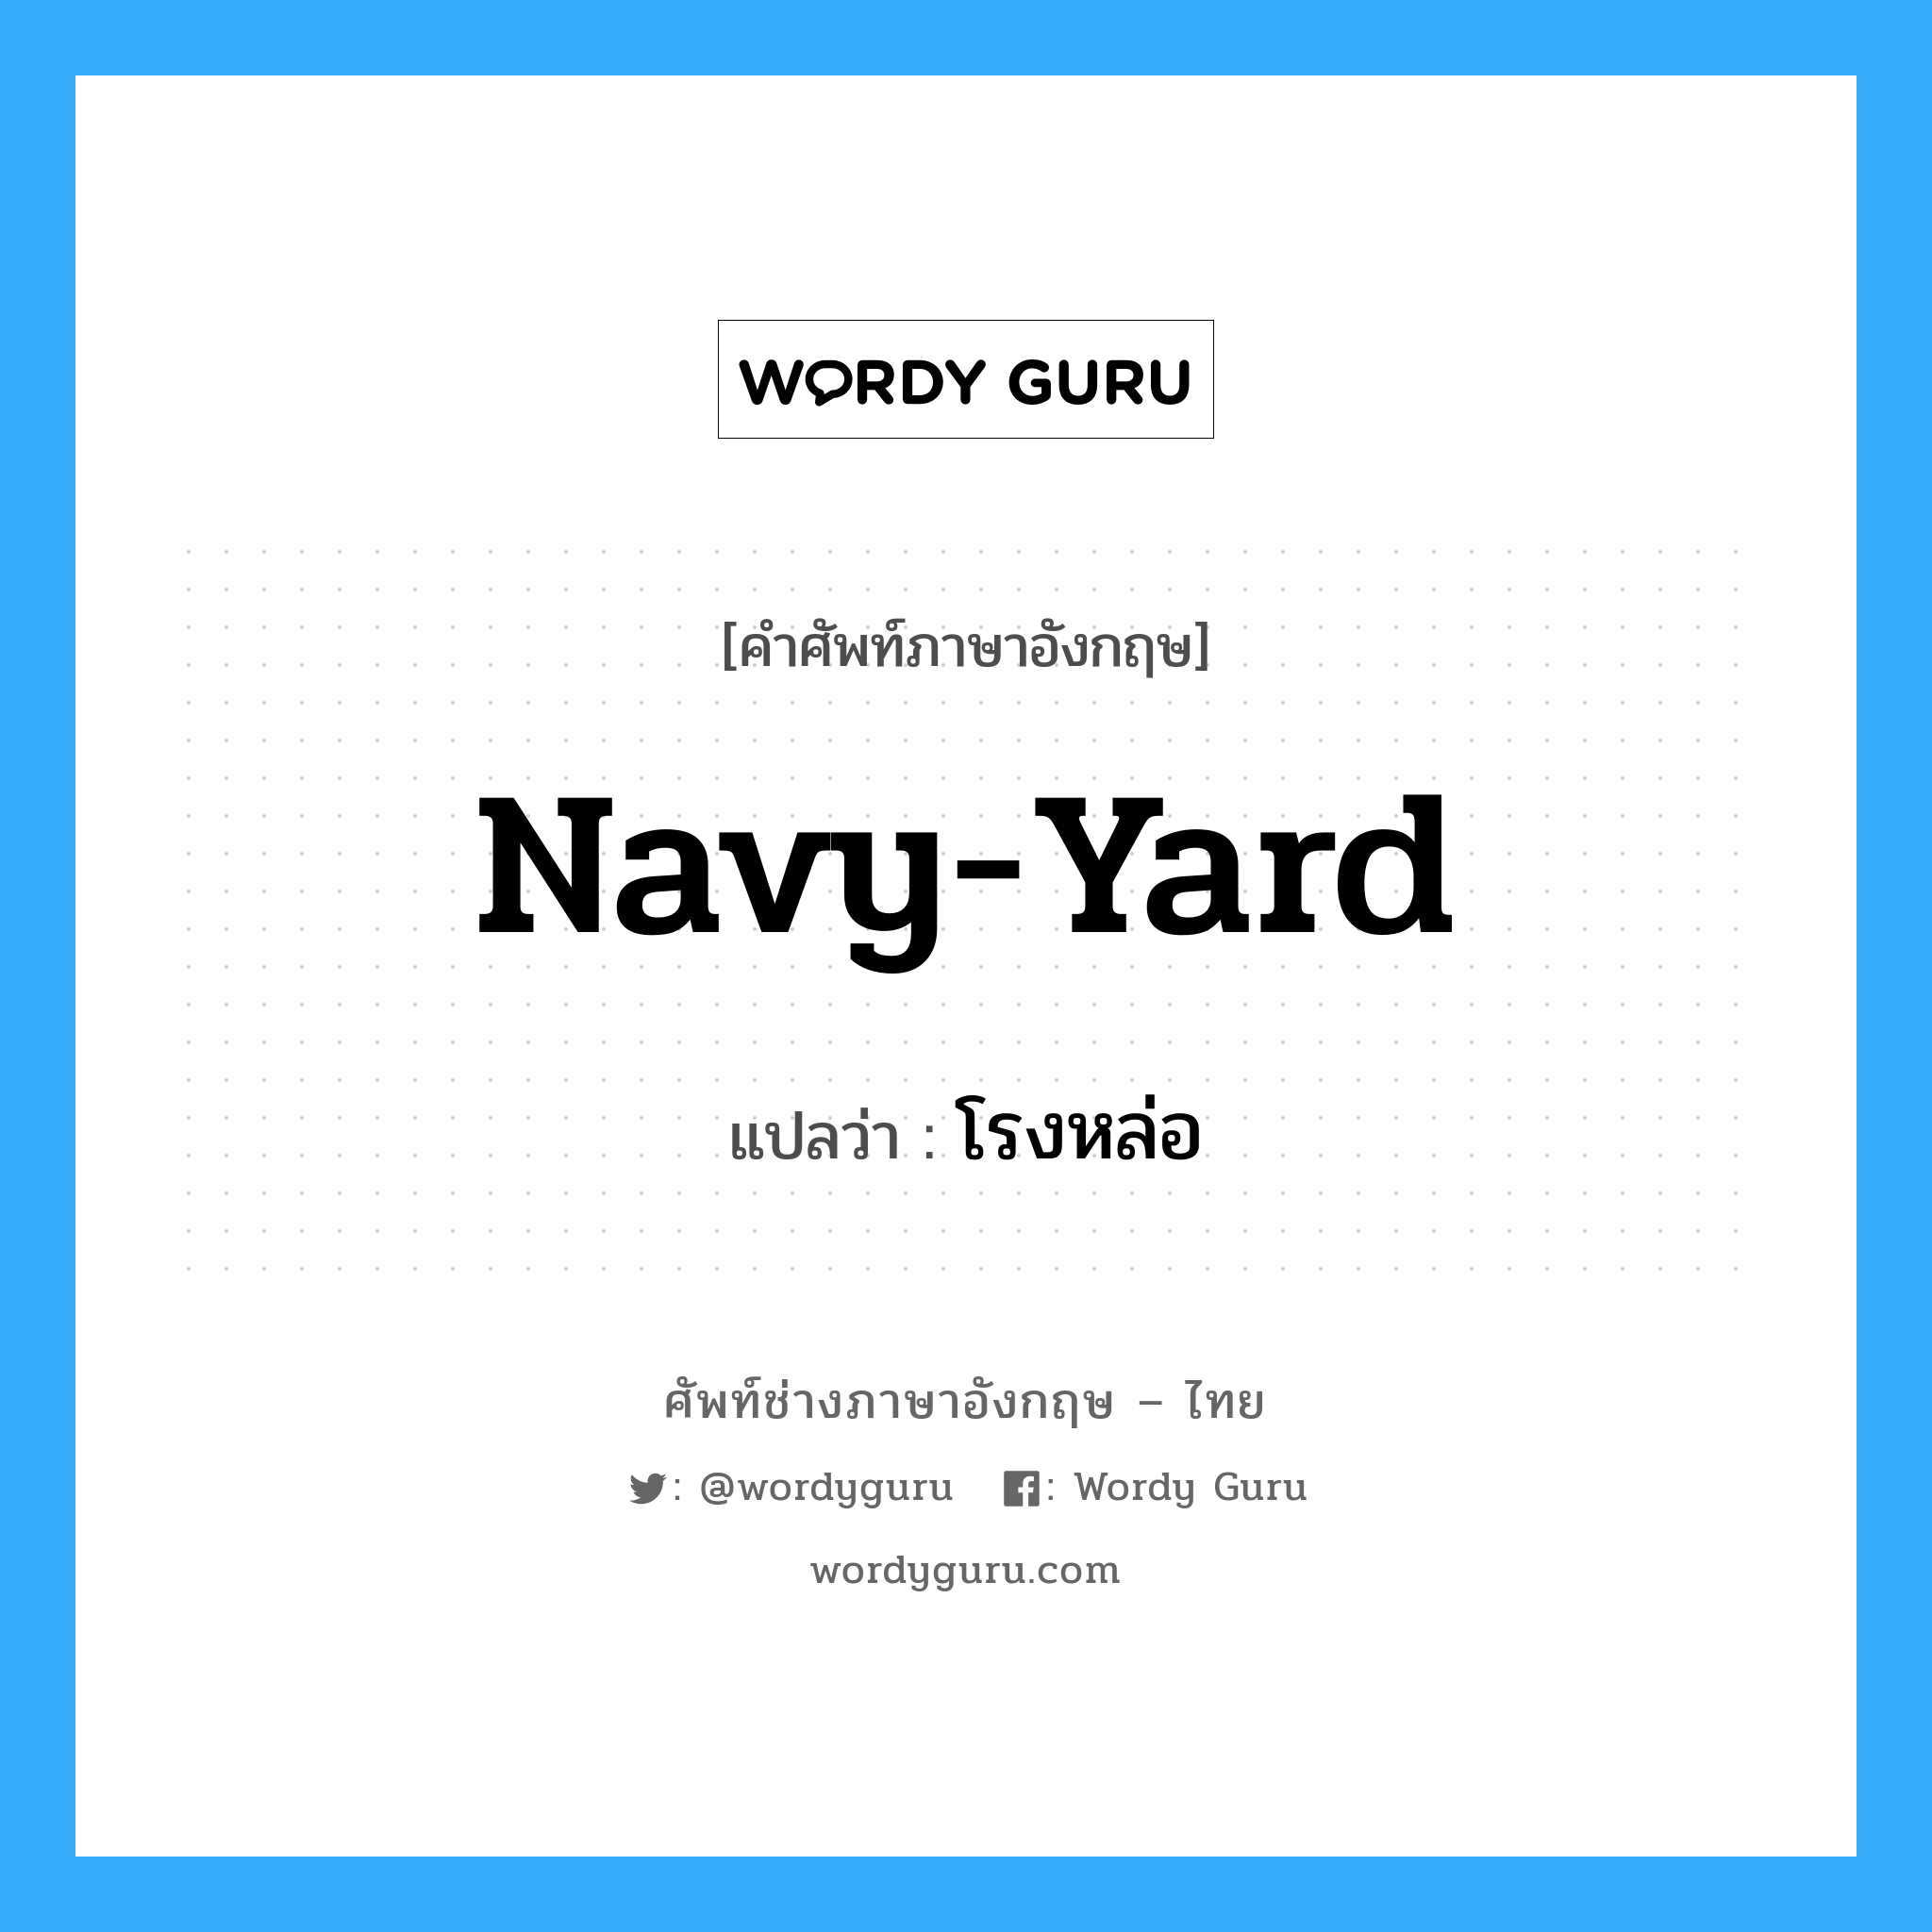 navy-yard แปลว่า?, คำศัพท์ช่างภาษาอังกฤษ - ไทย navy-yard คำศัพท์ภาษาอังกฤษ navy-yard แปลว่า โรงหล่อ